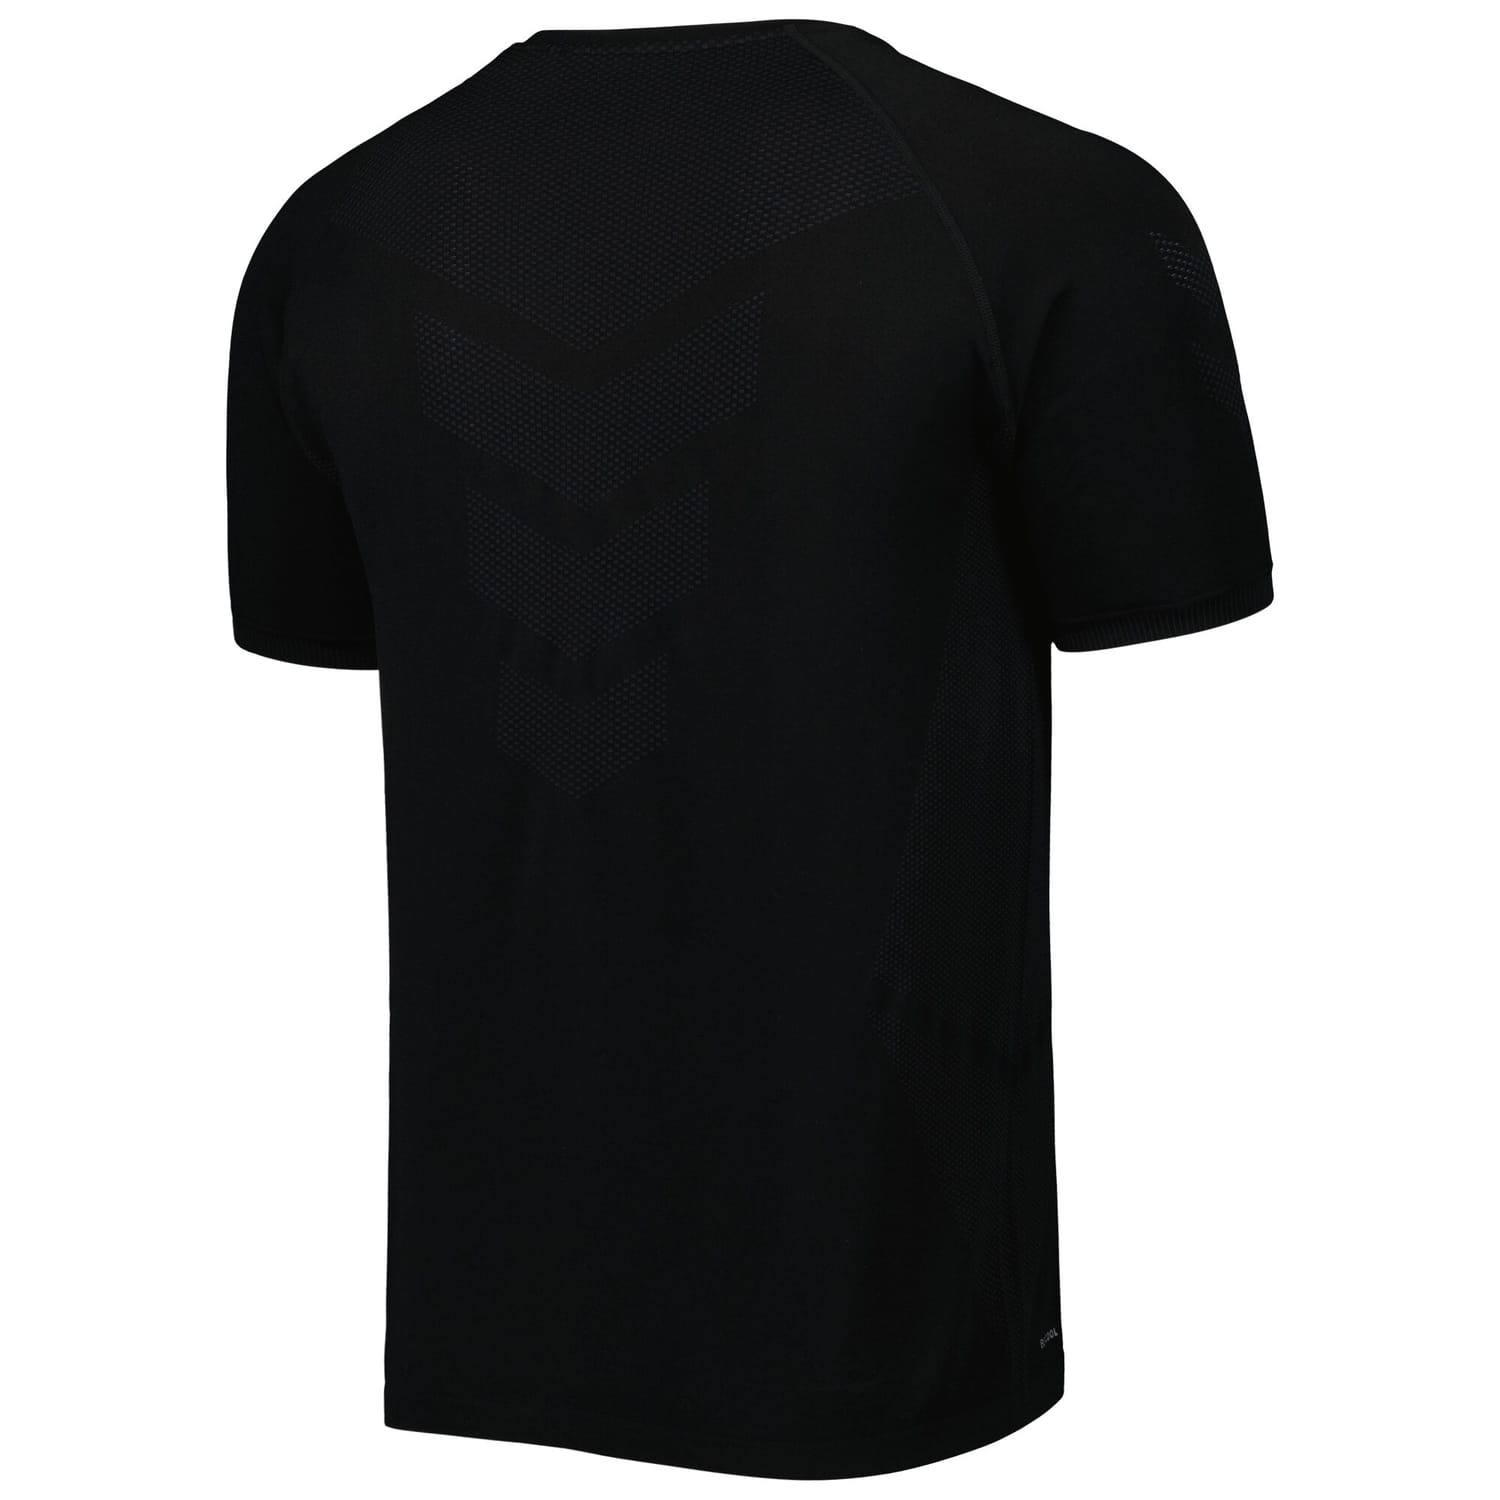 Denmark National Team Training Pro Jersey Shirt Black for Men